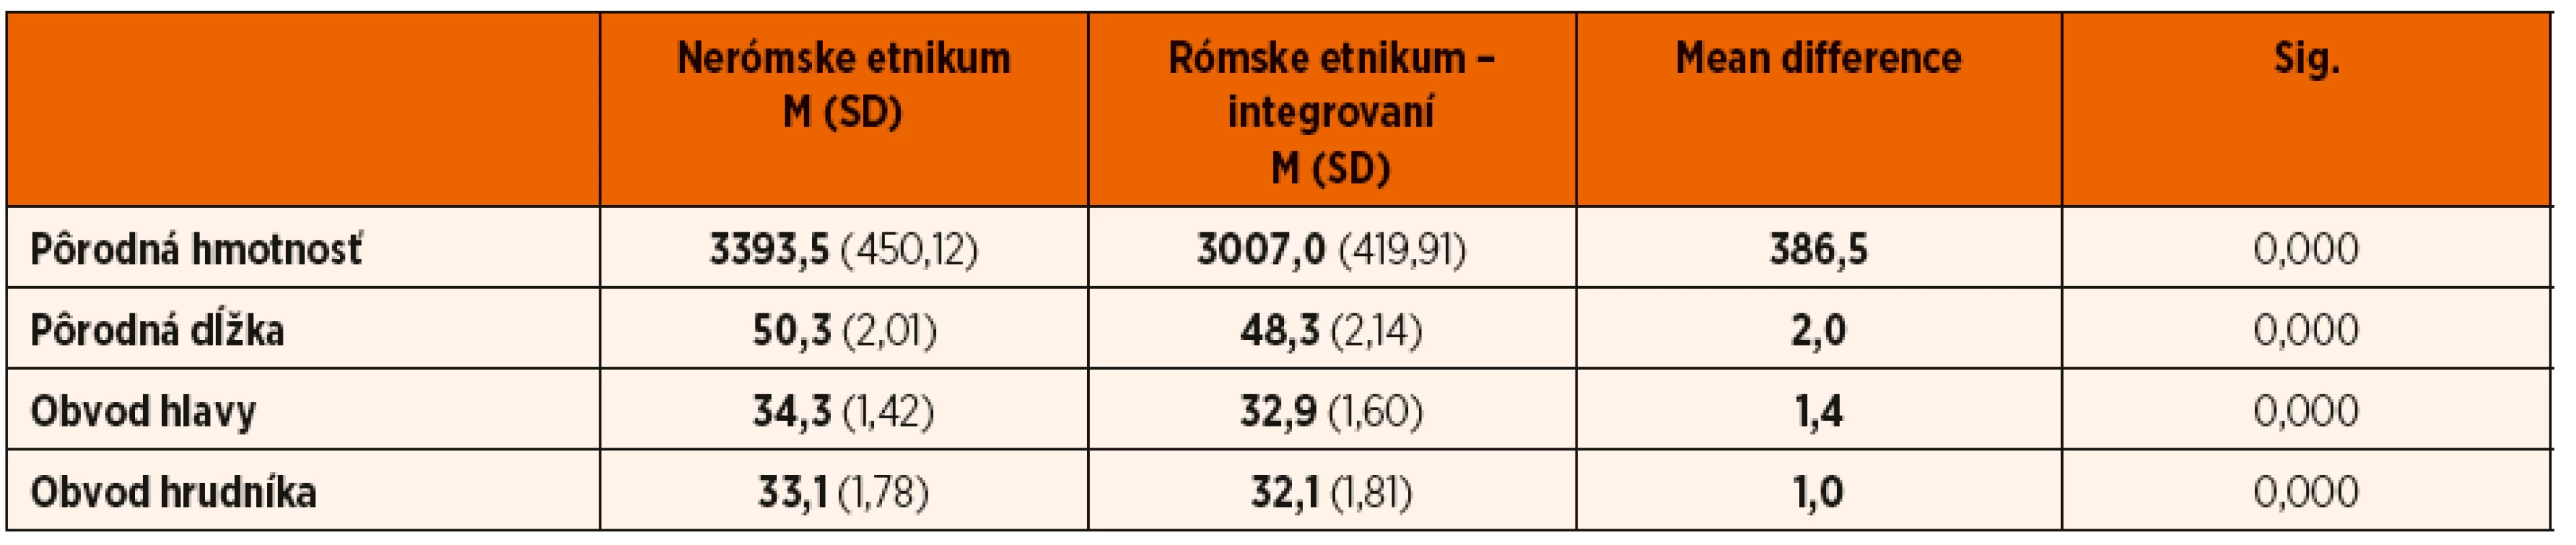 Komparácia antropometrických parametrov u novorodencov rómskeho etnika – integrovaných a novorodencov nerómskeho etnika.